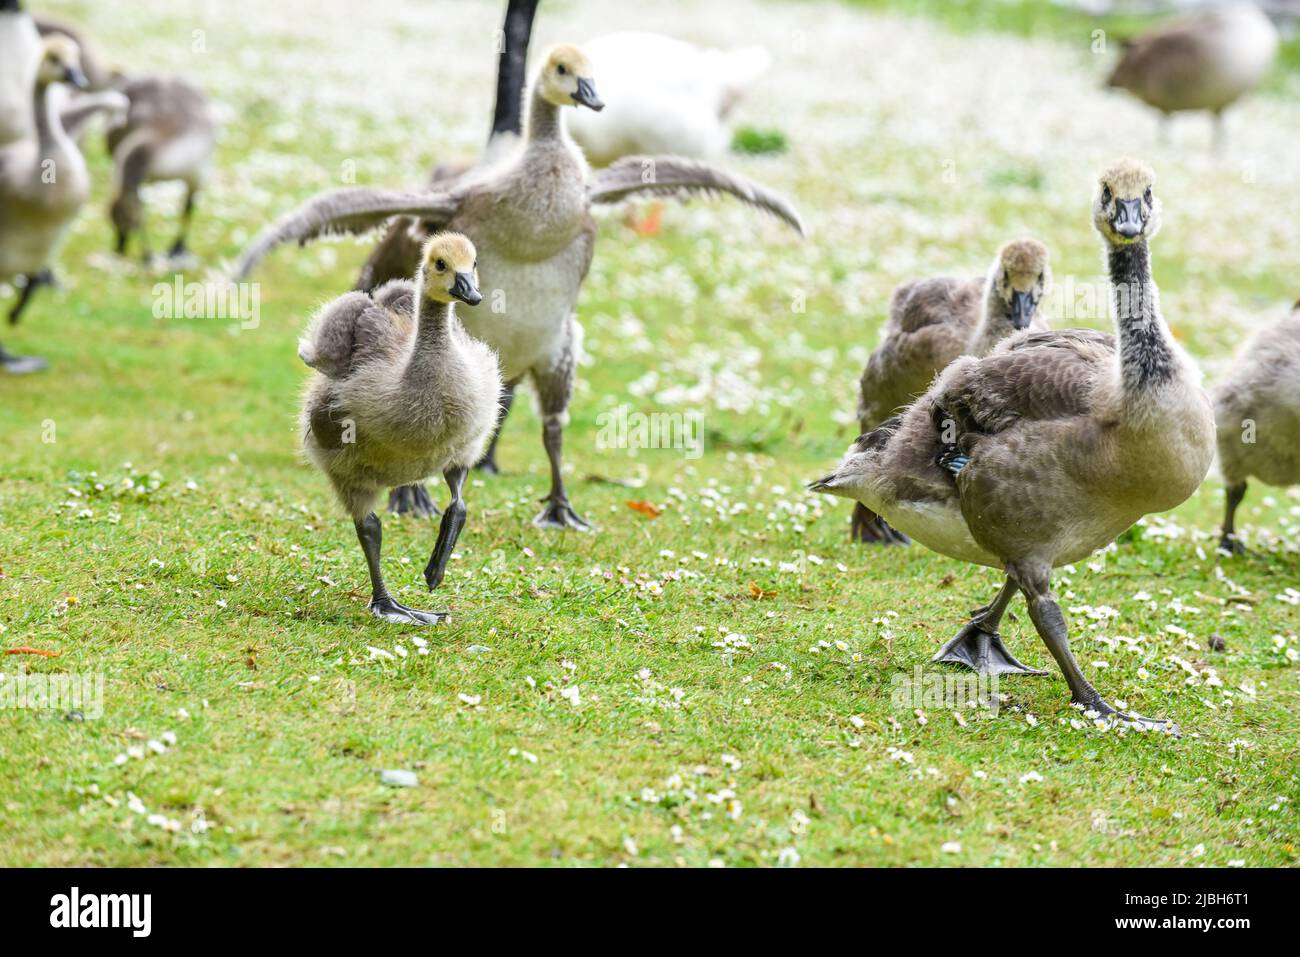 Los polluelos o goslings del ganso del bebé se alimentan en la orilla del río protegida por los gansos adultos Foto de stock